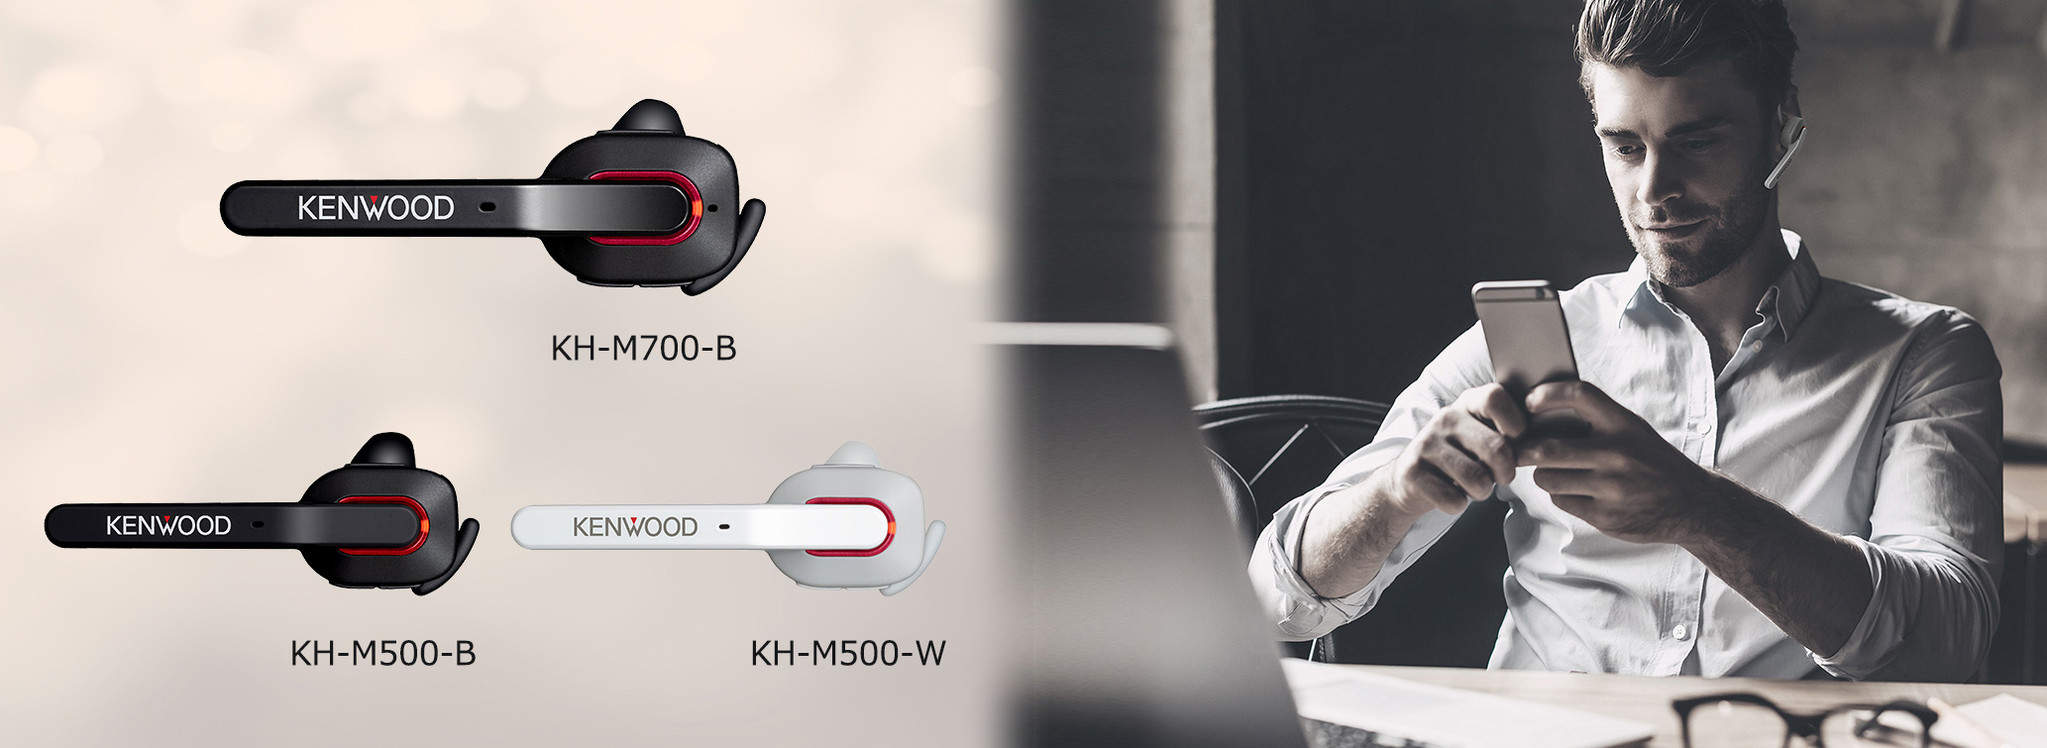 Bluetooth®対応ワイヤレスヘッドセット「KH-M700」「KH-M500」を発売